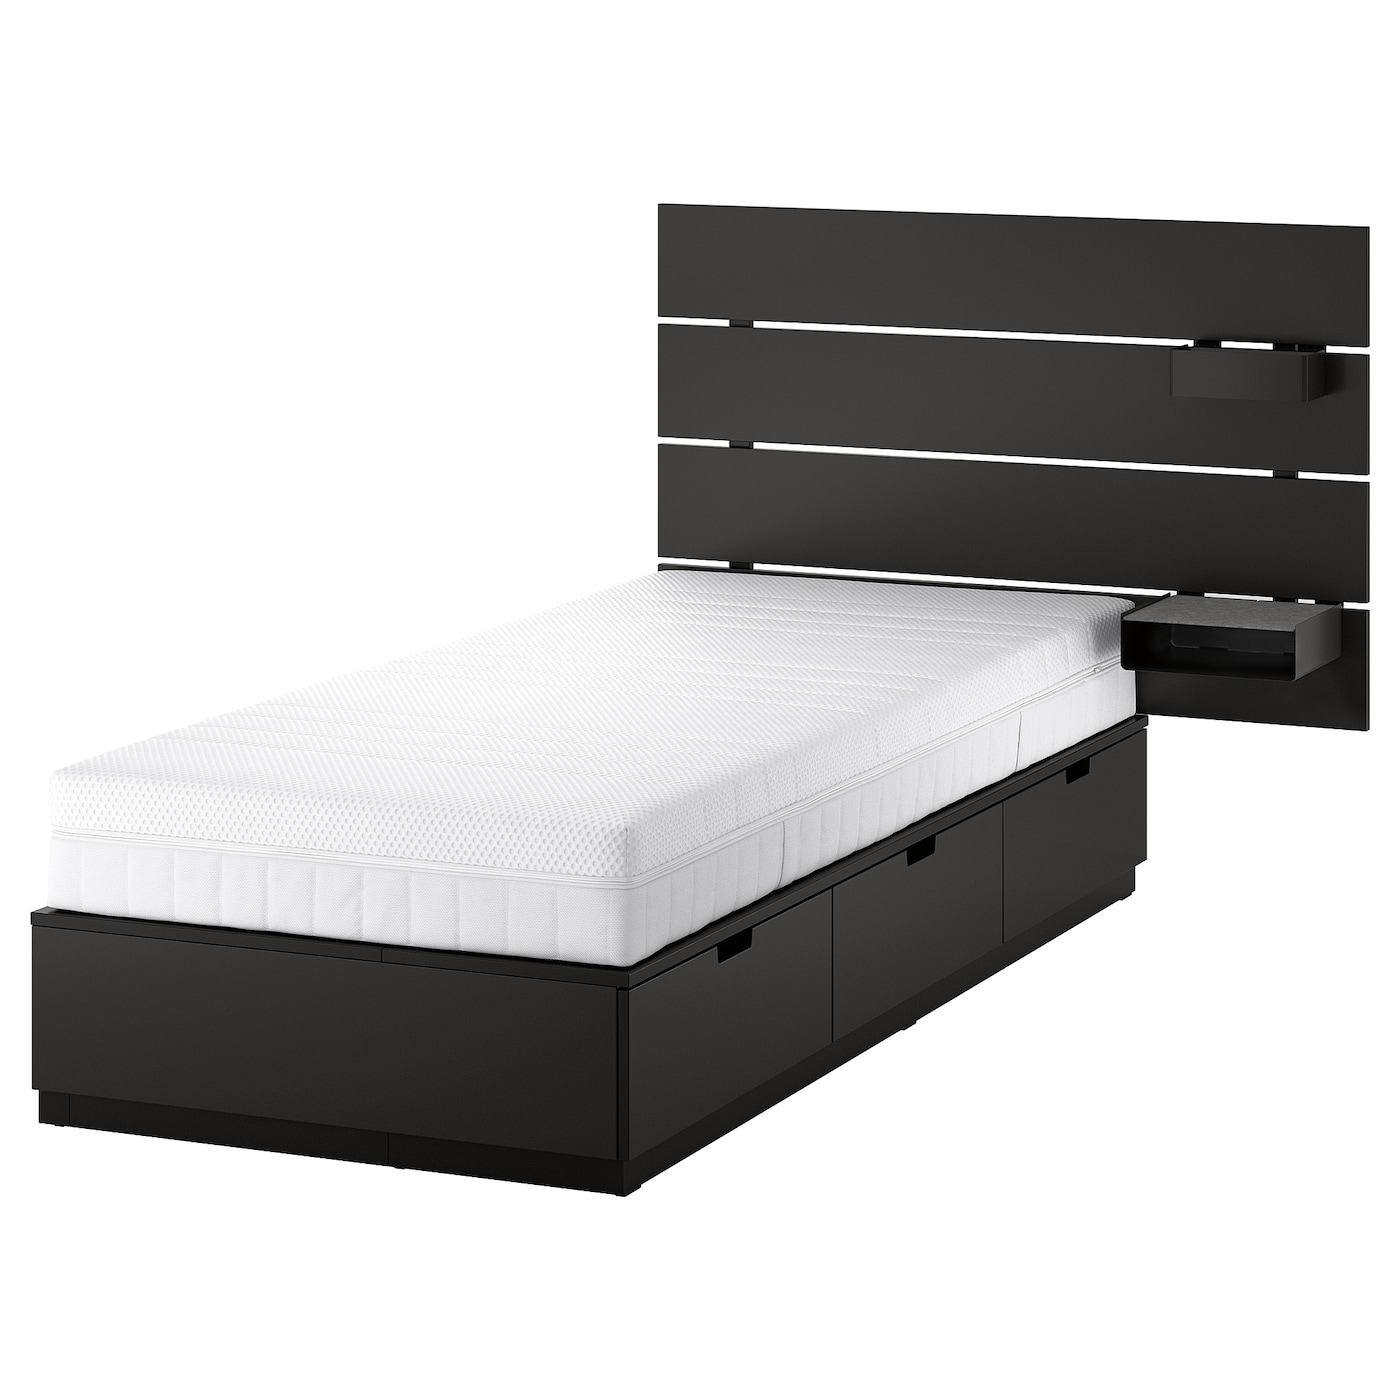 Каркас кровати с контейнером и матрасом - IKEA NORDLI, 200х90 см, матрас жесткий, черный, НОРДЛИ ИКЕА